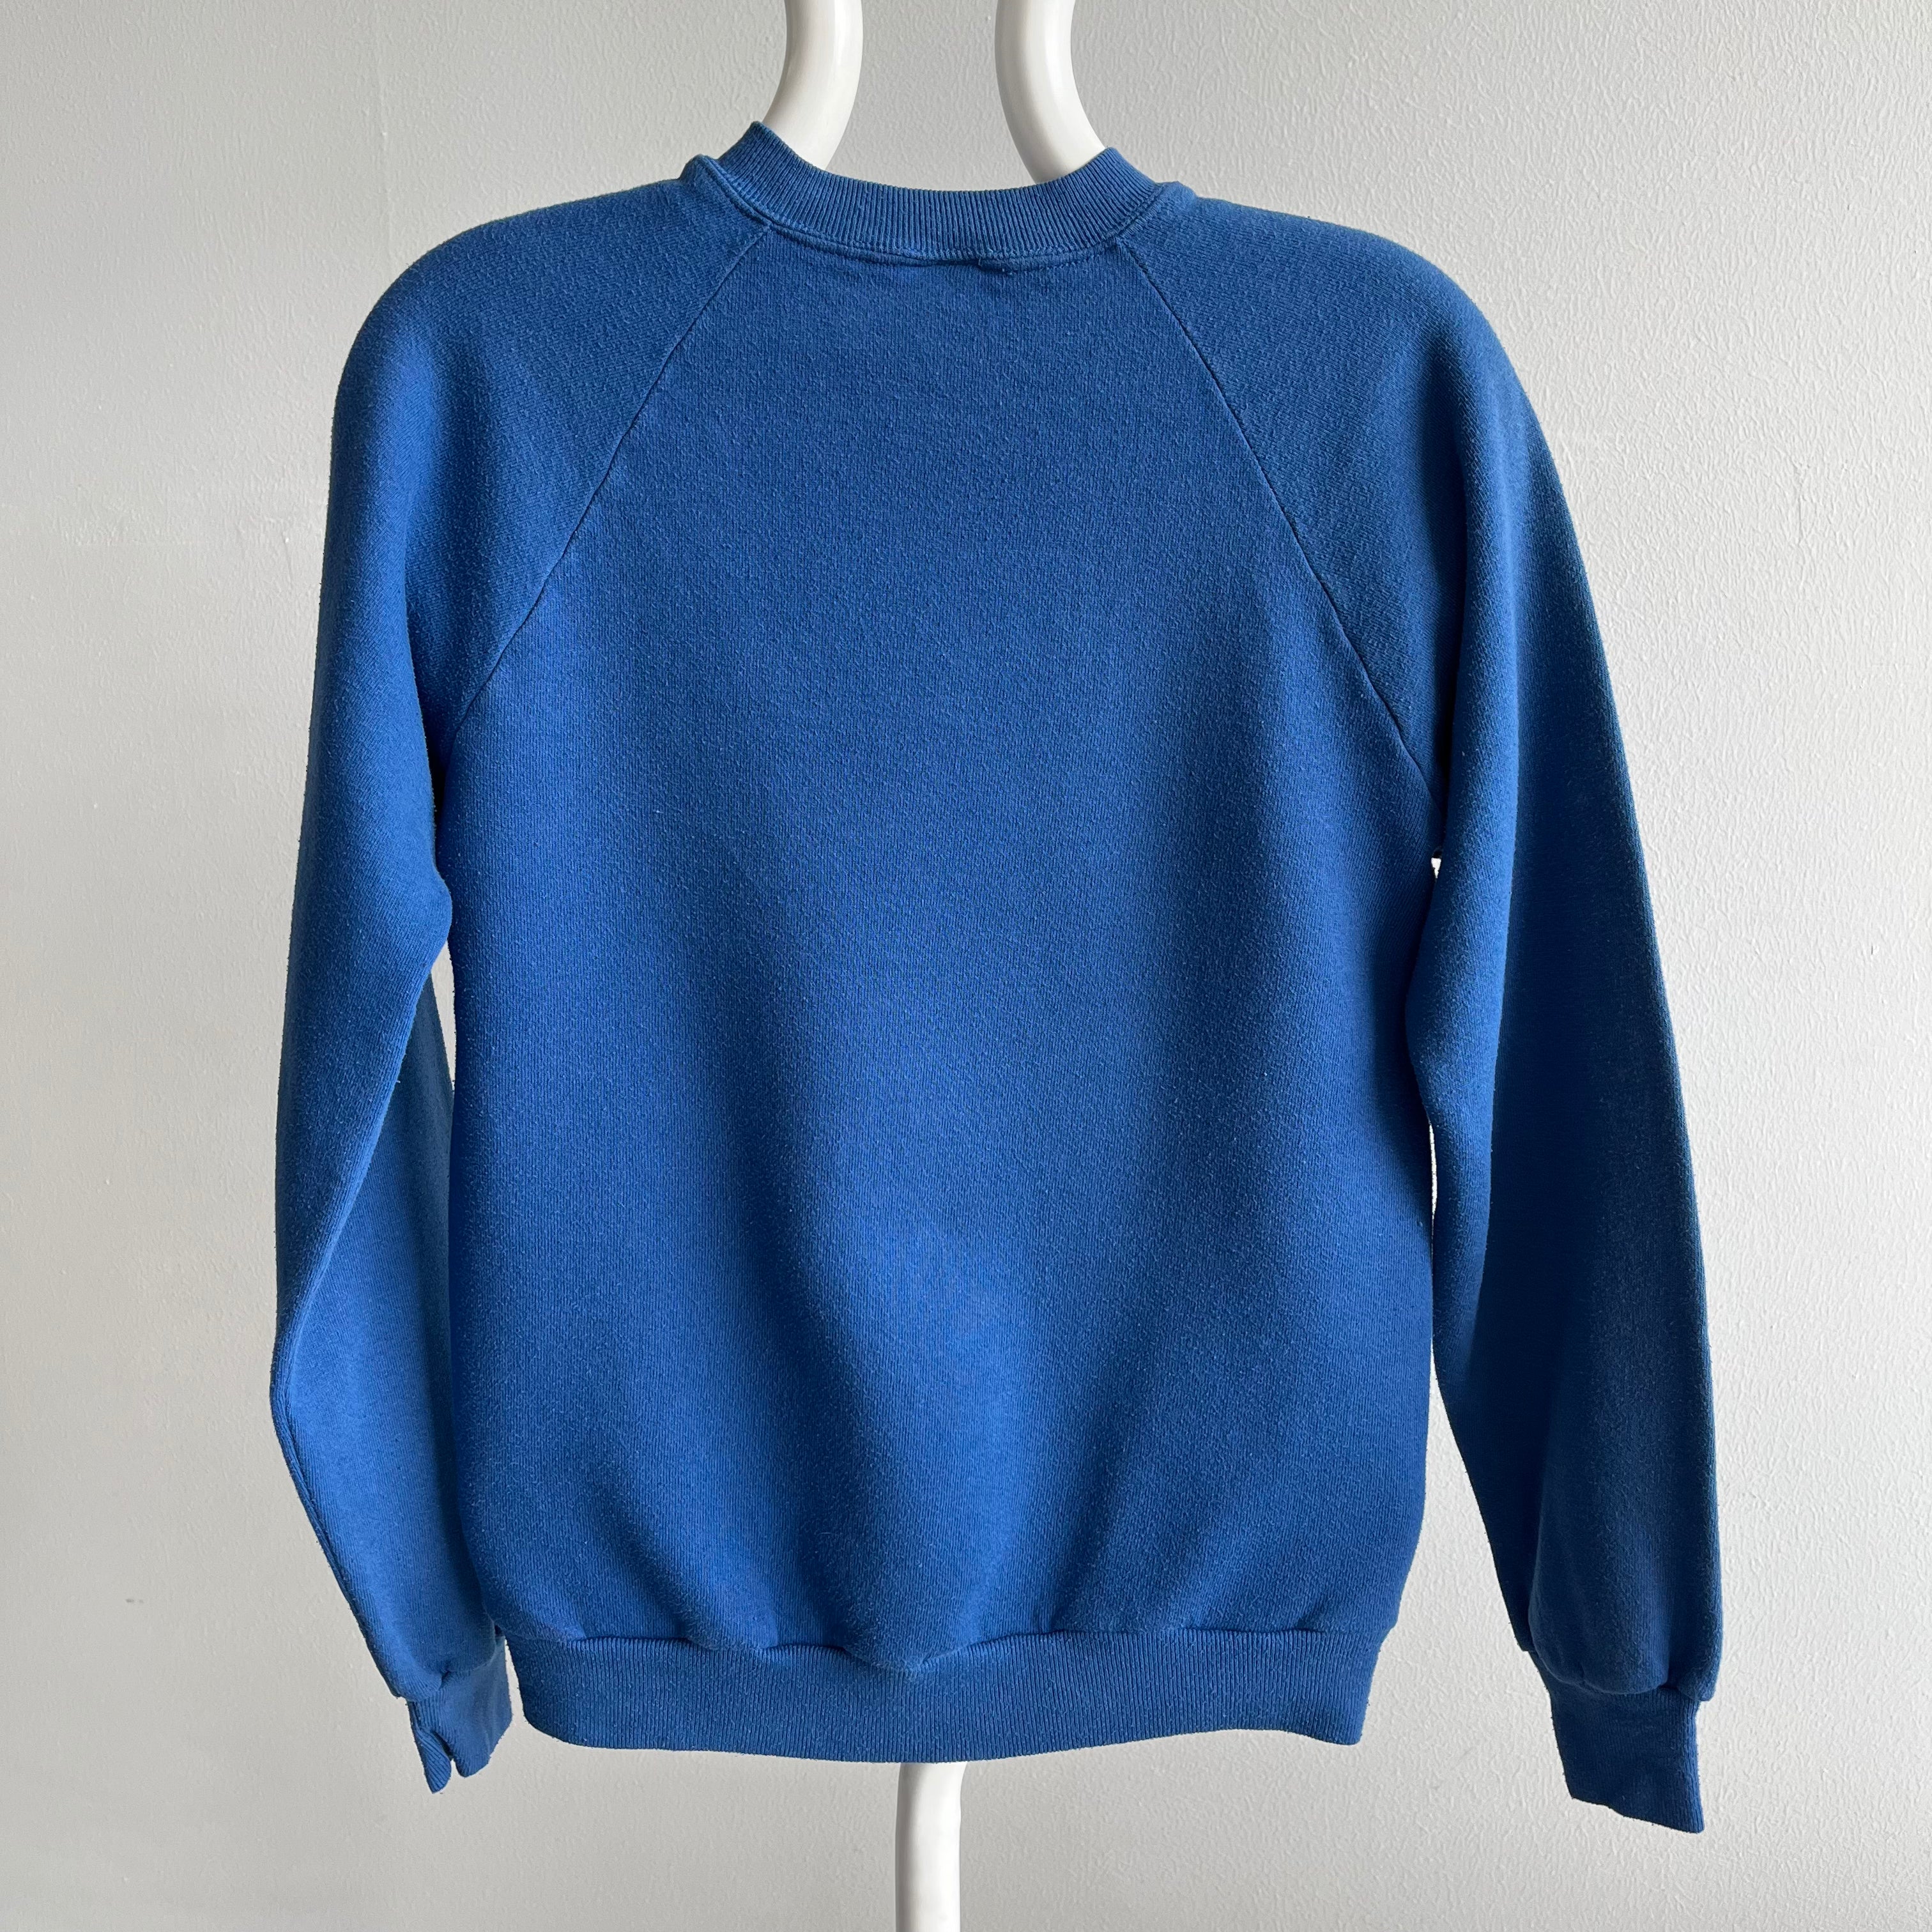 1980s USPS Uniform Sweatshirt by Jerzees